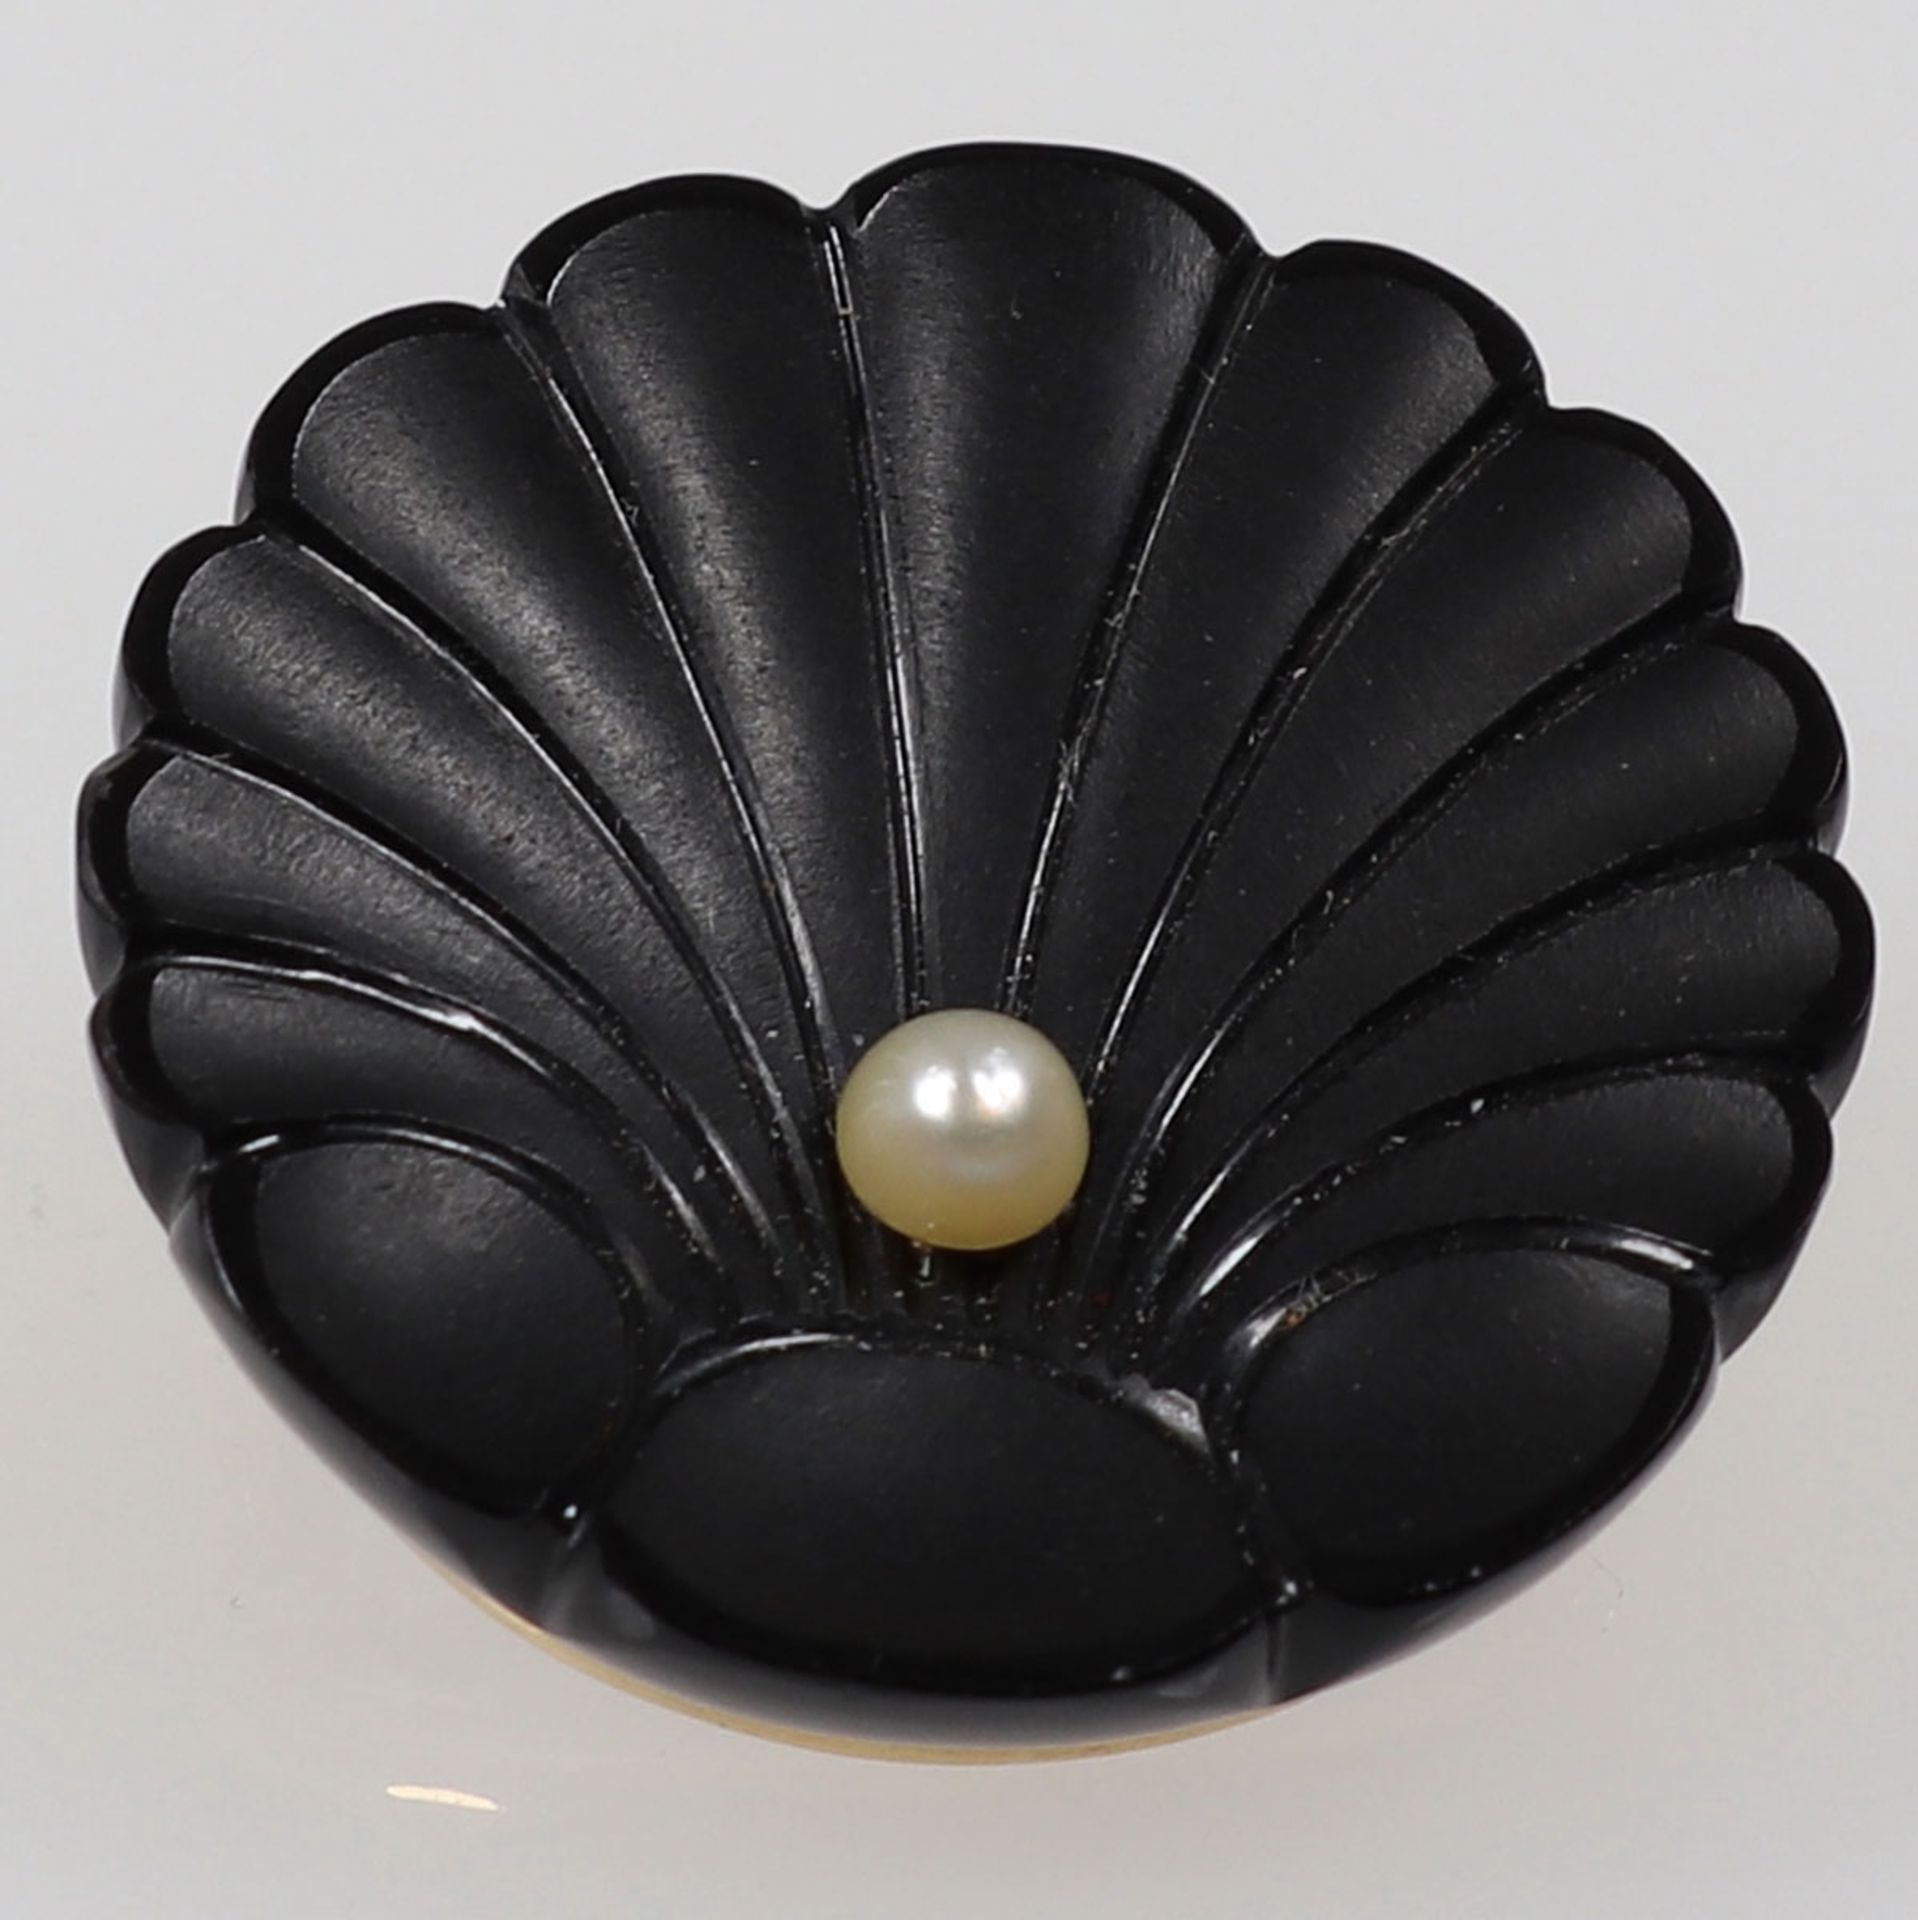 Onyx-Brosche mit Perle - Stilisierte Muschel585/- Roségold, gestempelt. Gewicht: 8 g. Onyx (2,2 x